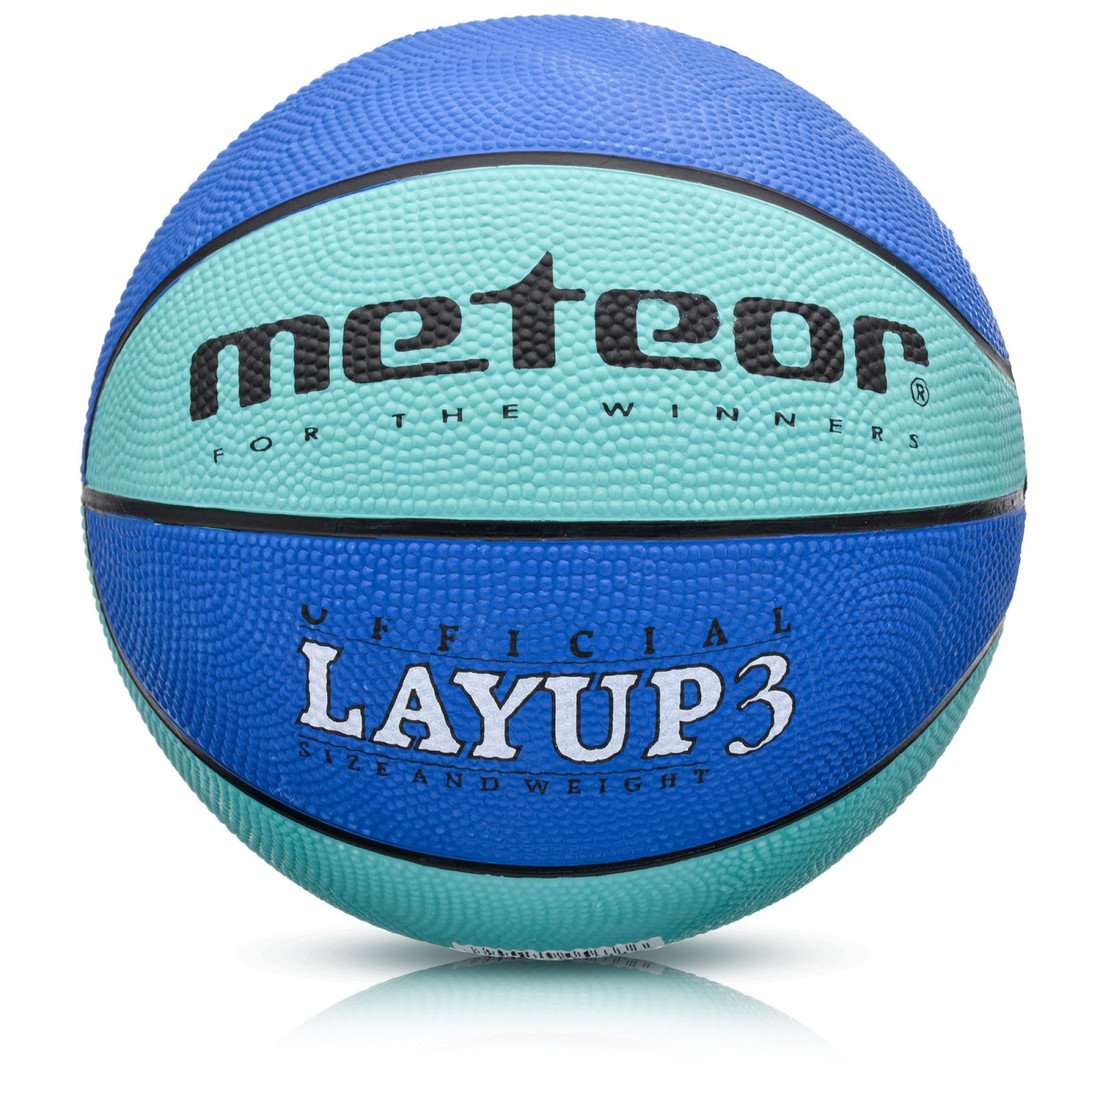 Basketbalový míč METEOR LAYUP vel.3, modrý